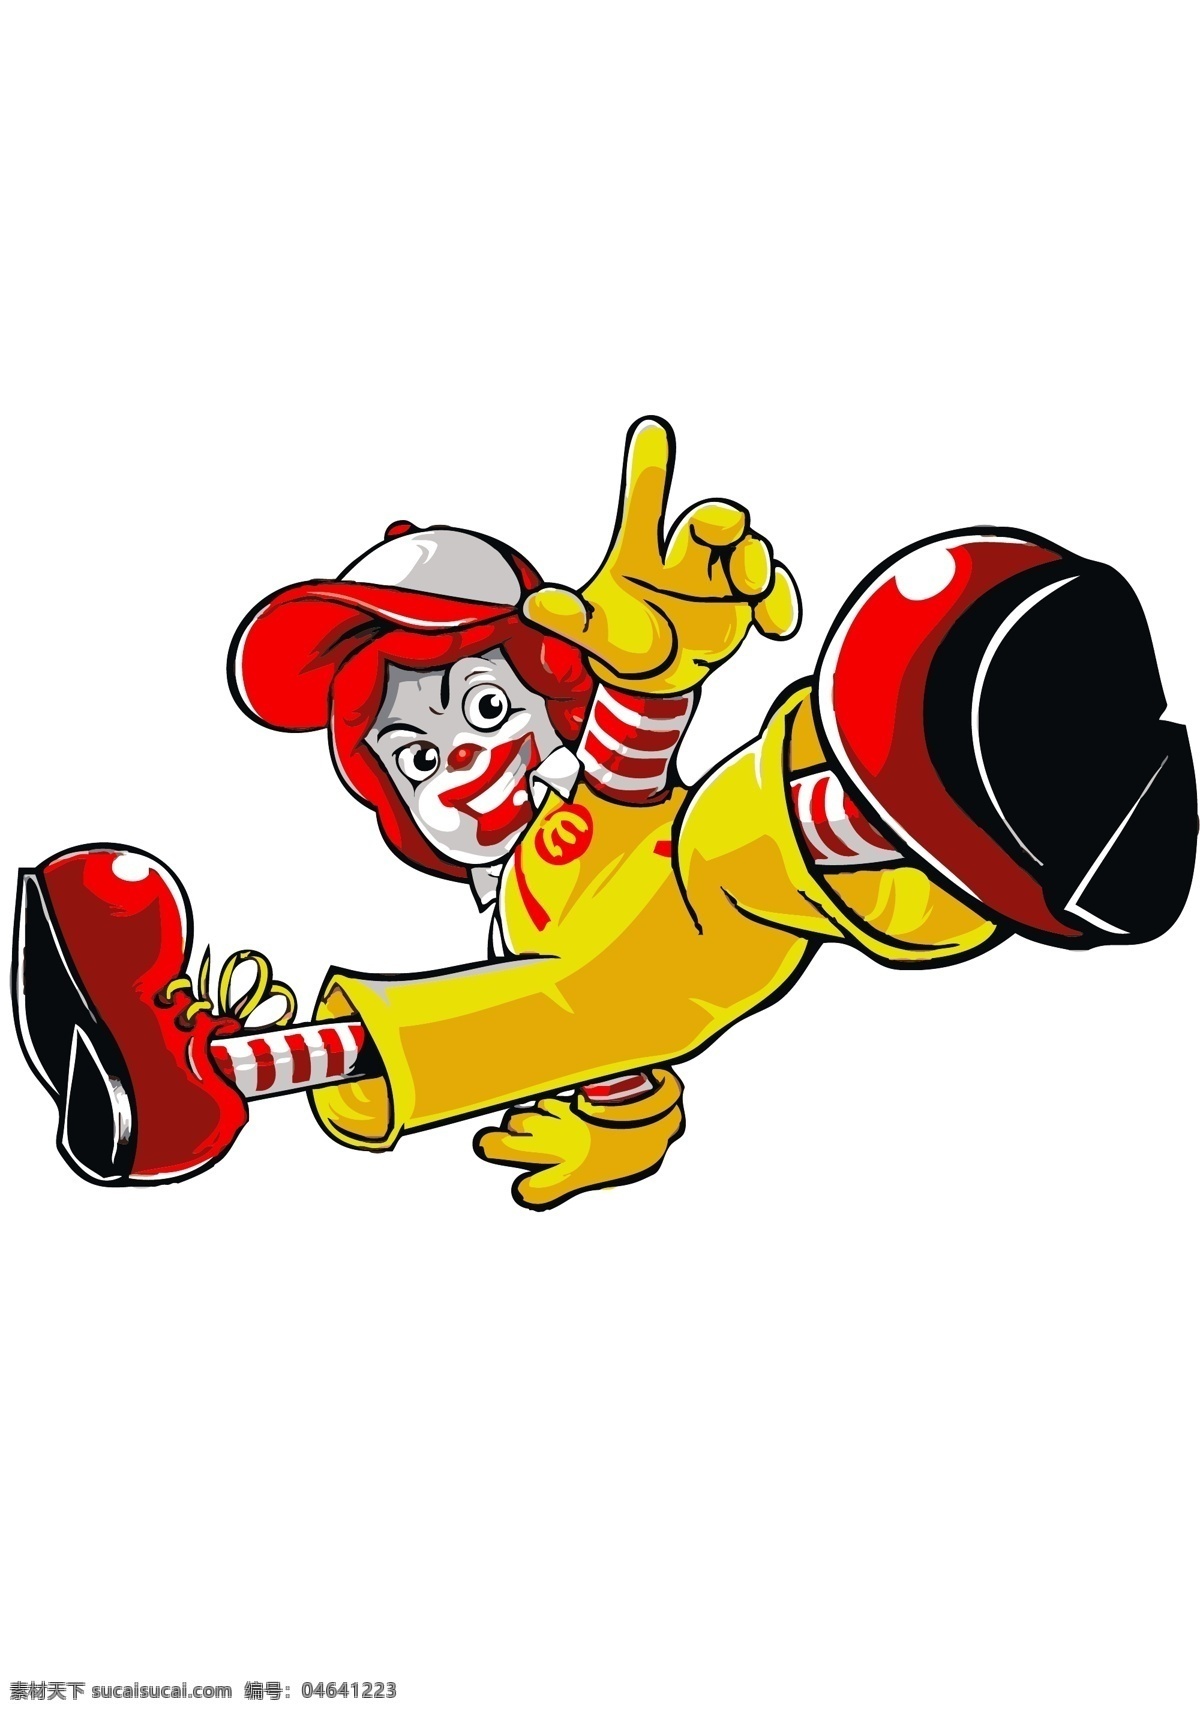 麦当劳 叔叔 卡通 麦当劳叔叔 企业 logo 标志 标识标志图标 矢量